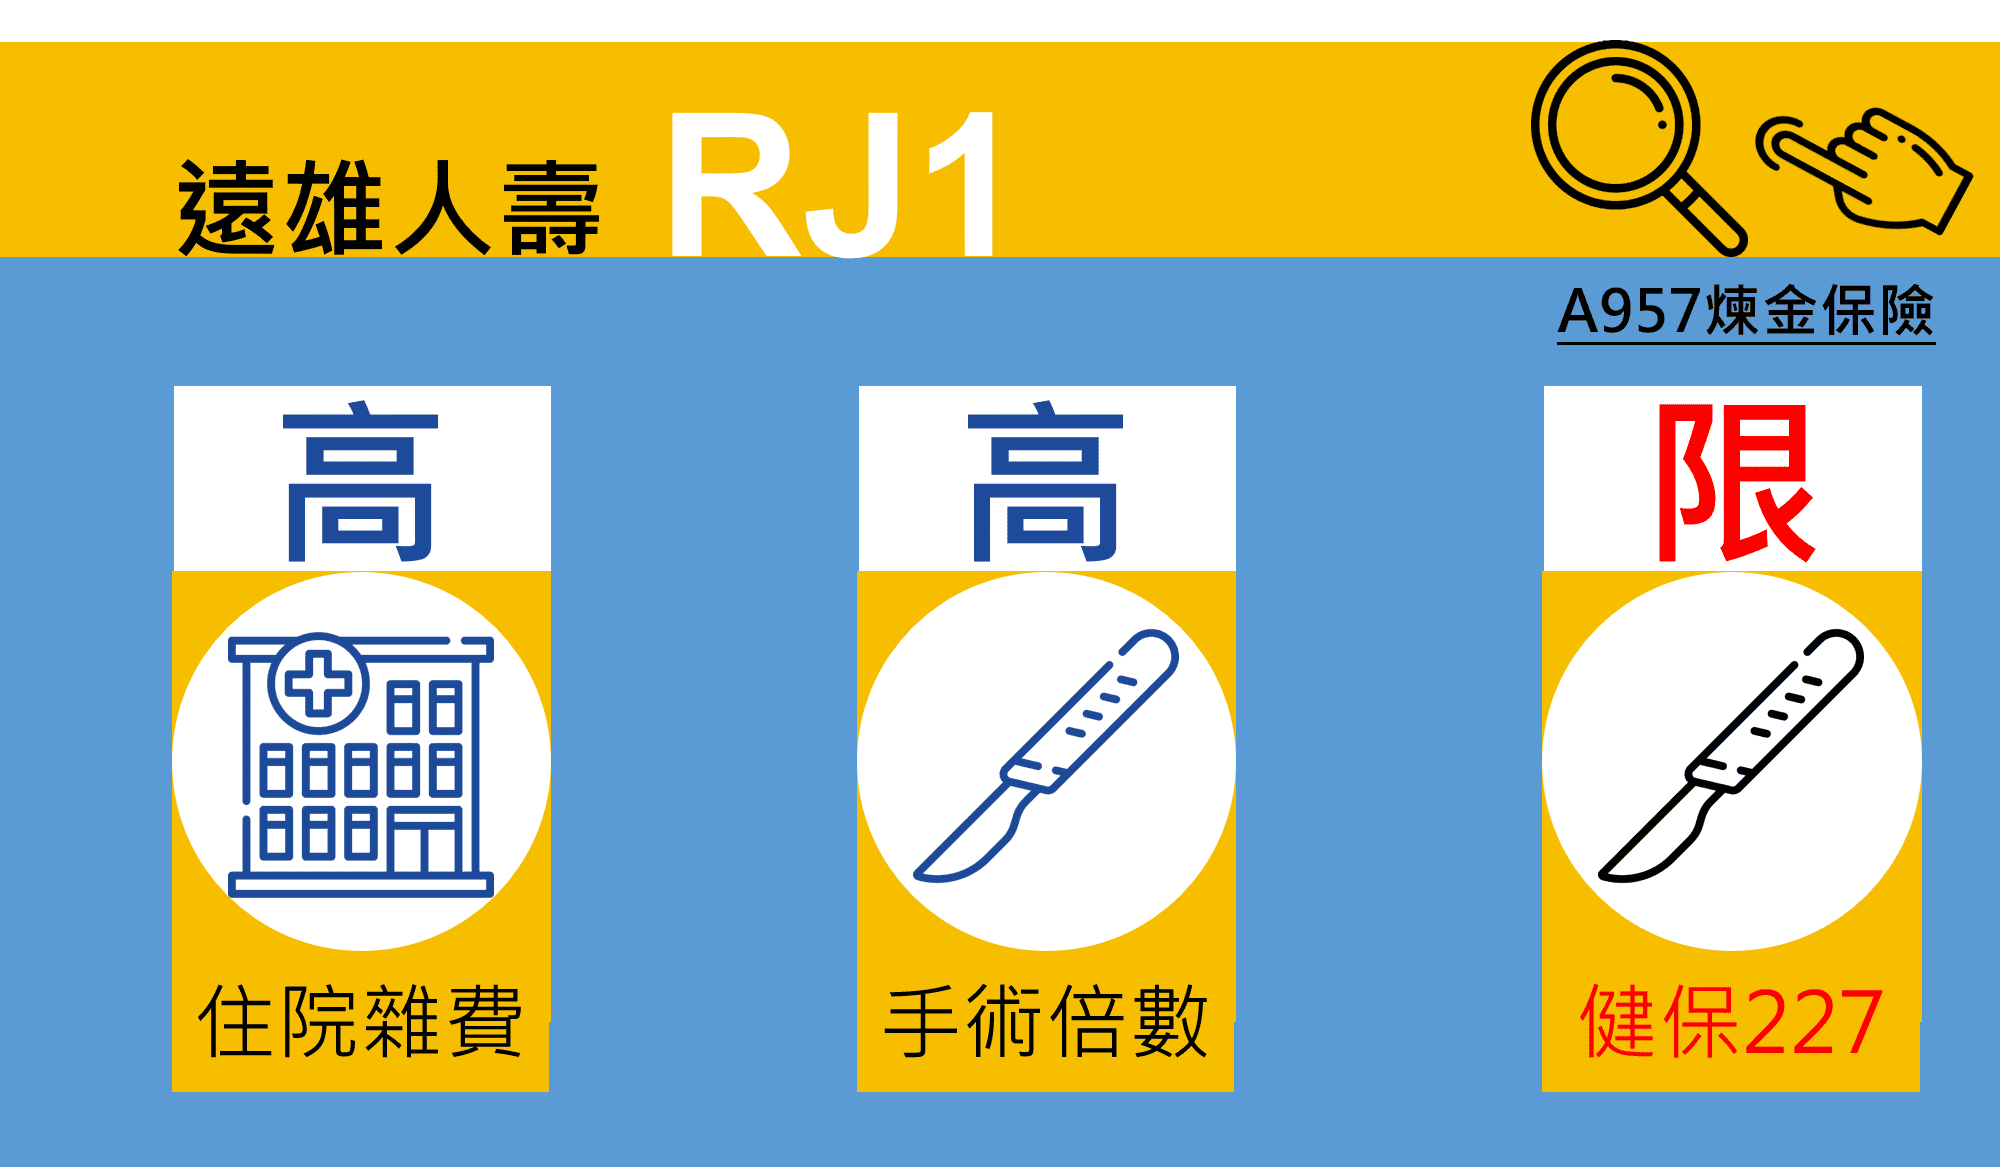 康富-遠雄RJ1-推薦比較整理重點